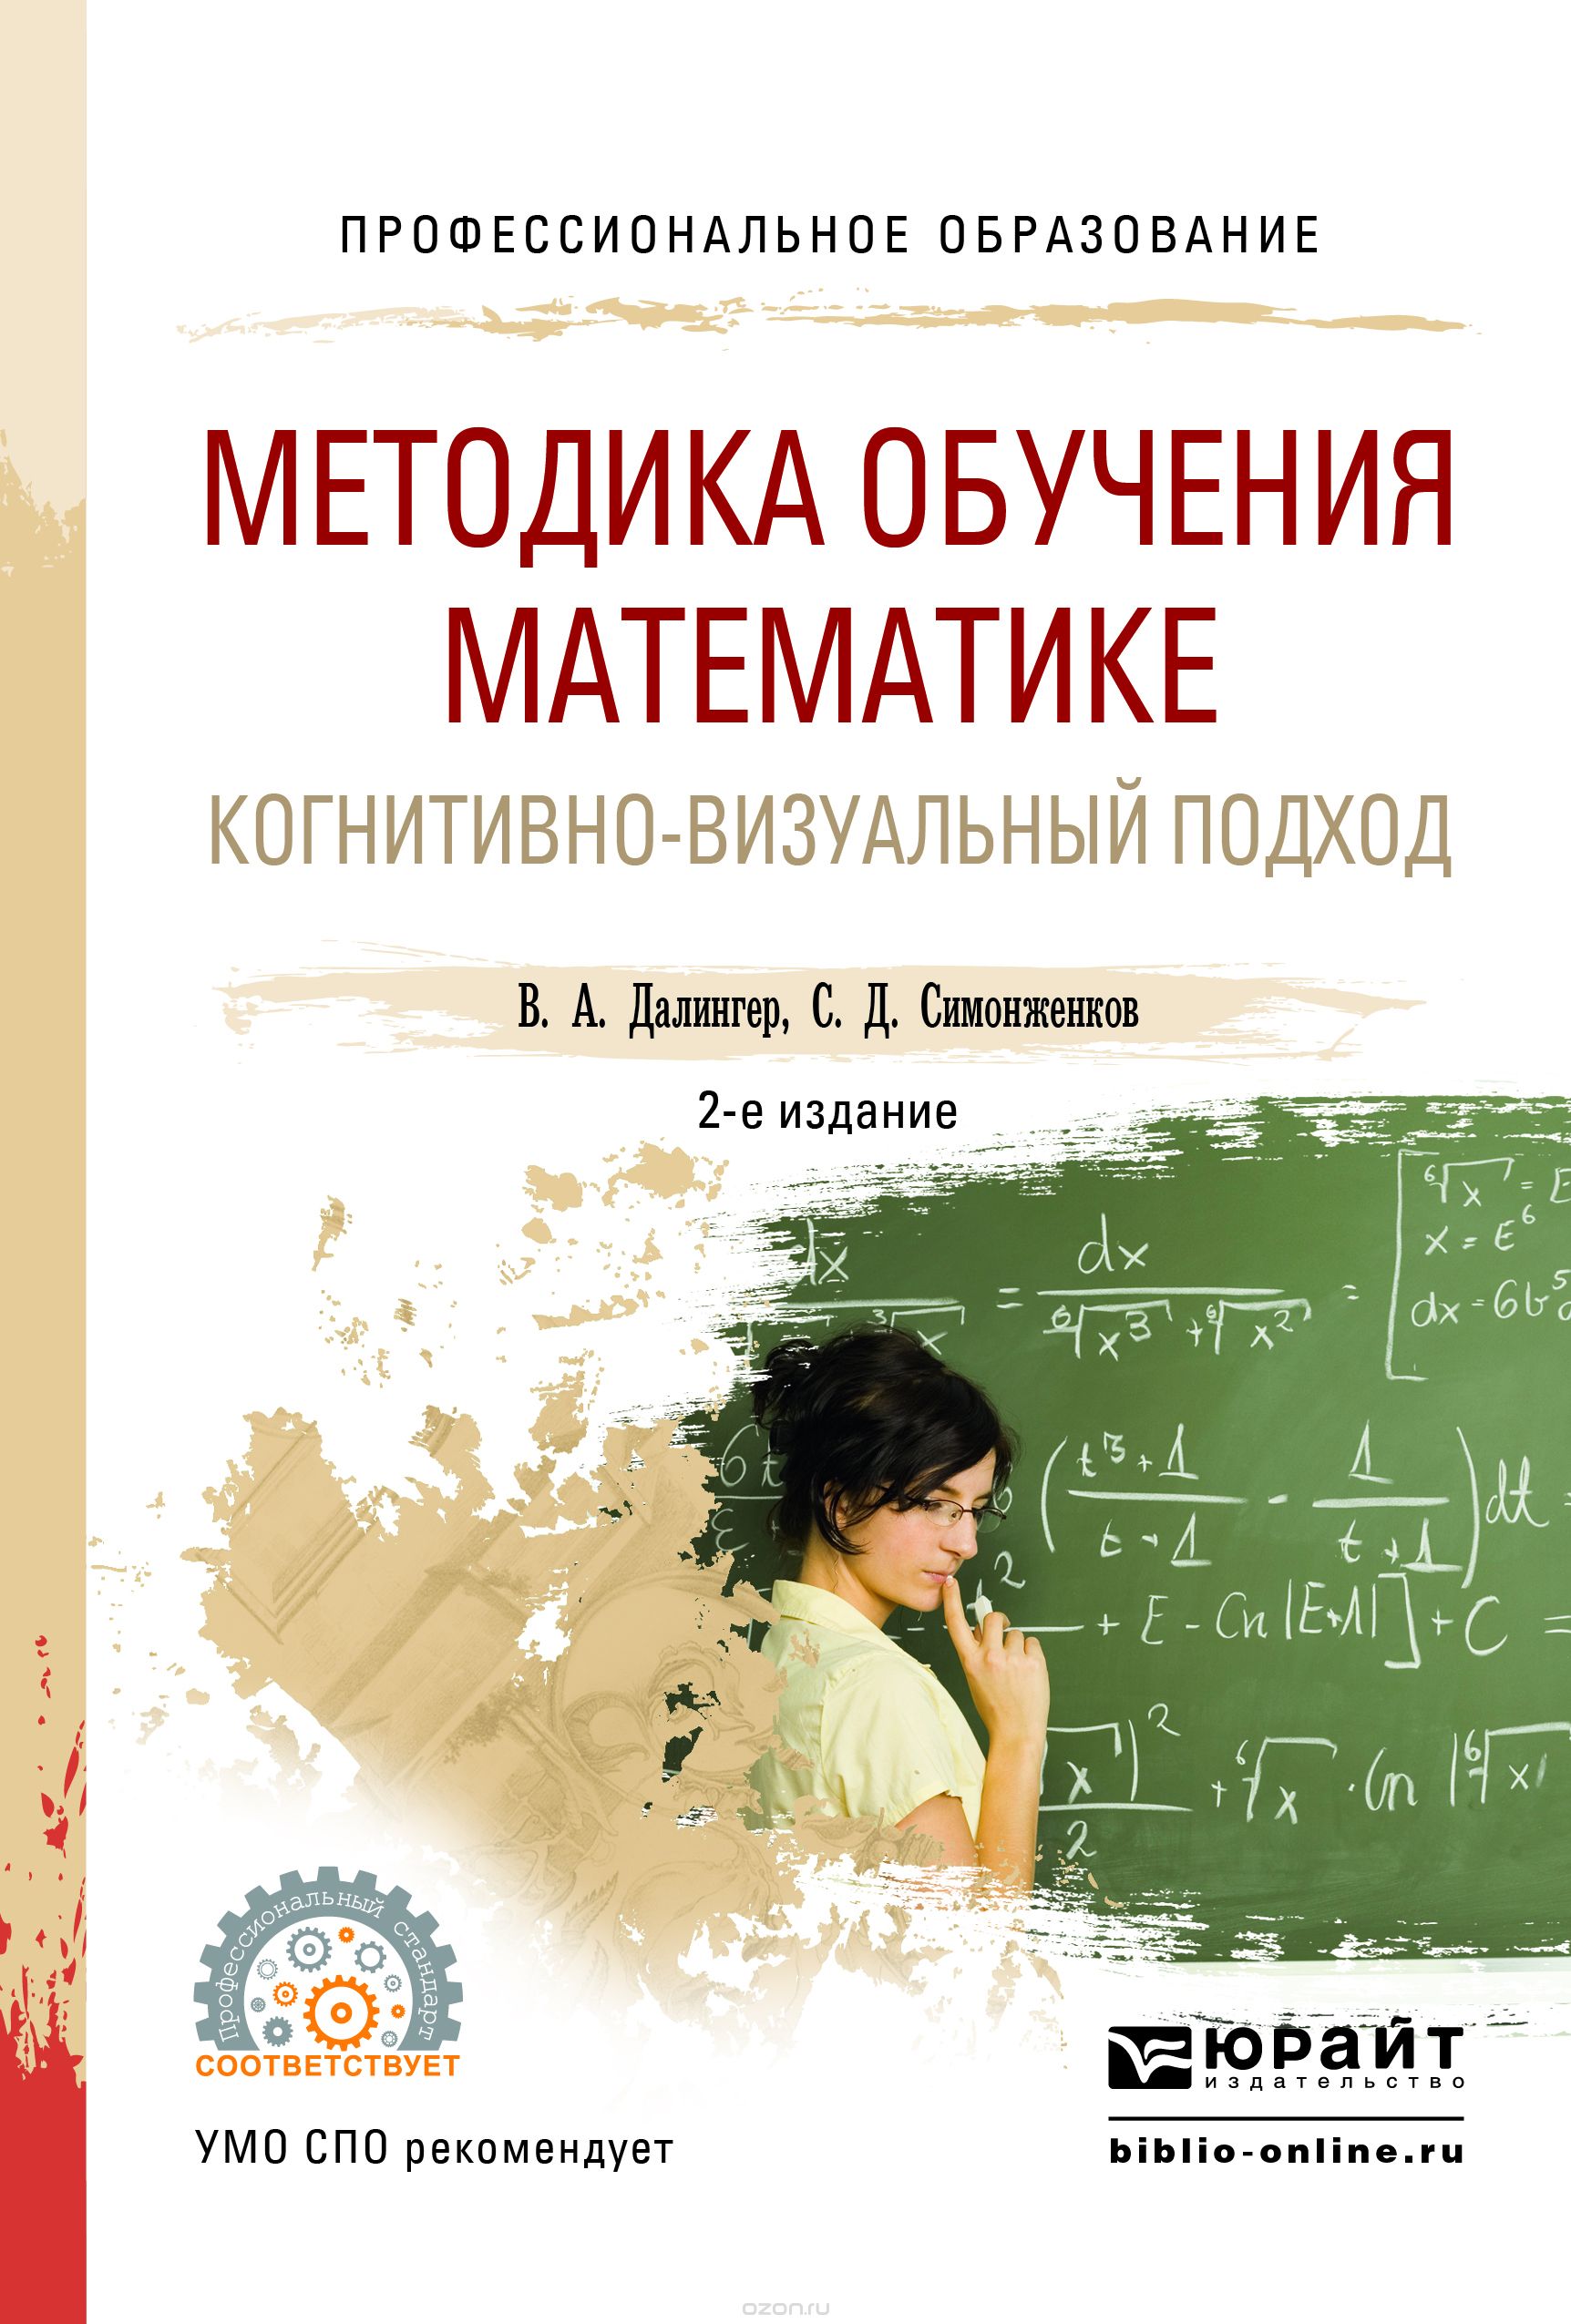 Скачать книгу "Методика обучения математике. Когнитивно-визуальный подход. Учебник, В. А. Далингер, С. Д. Симонженков"